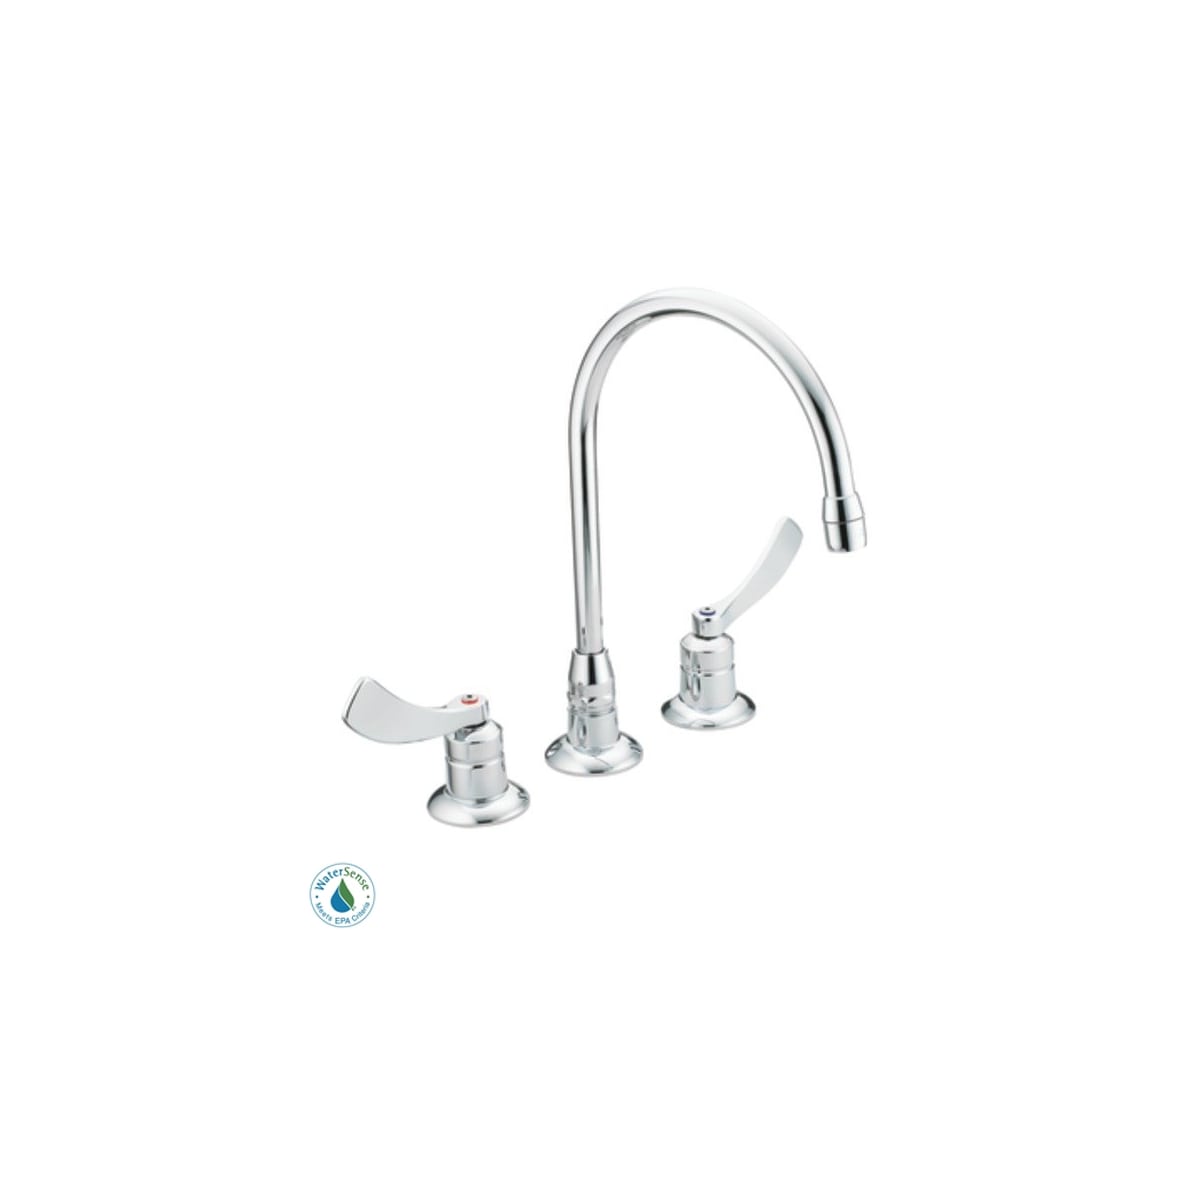 Moen 8225smf15 Chrome M Dura Commercial Bar Faucet Faucet Com